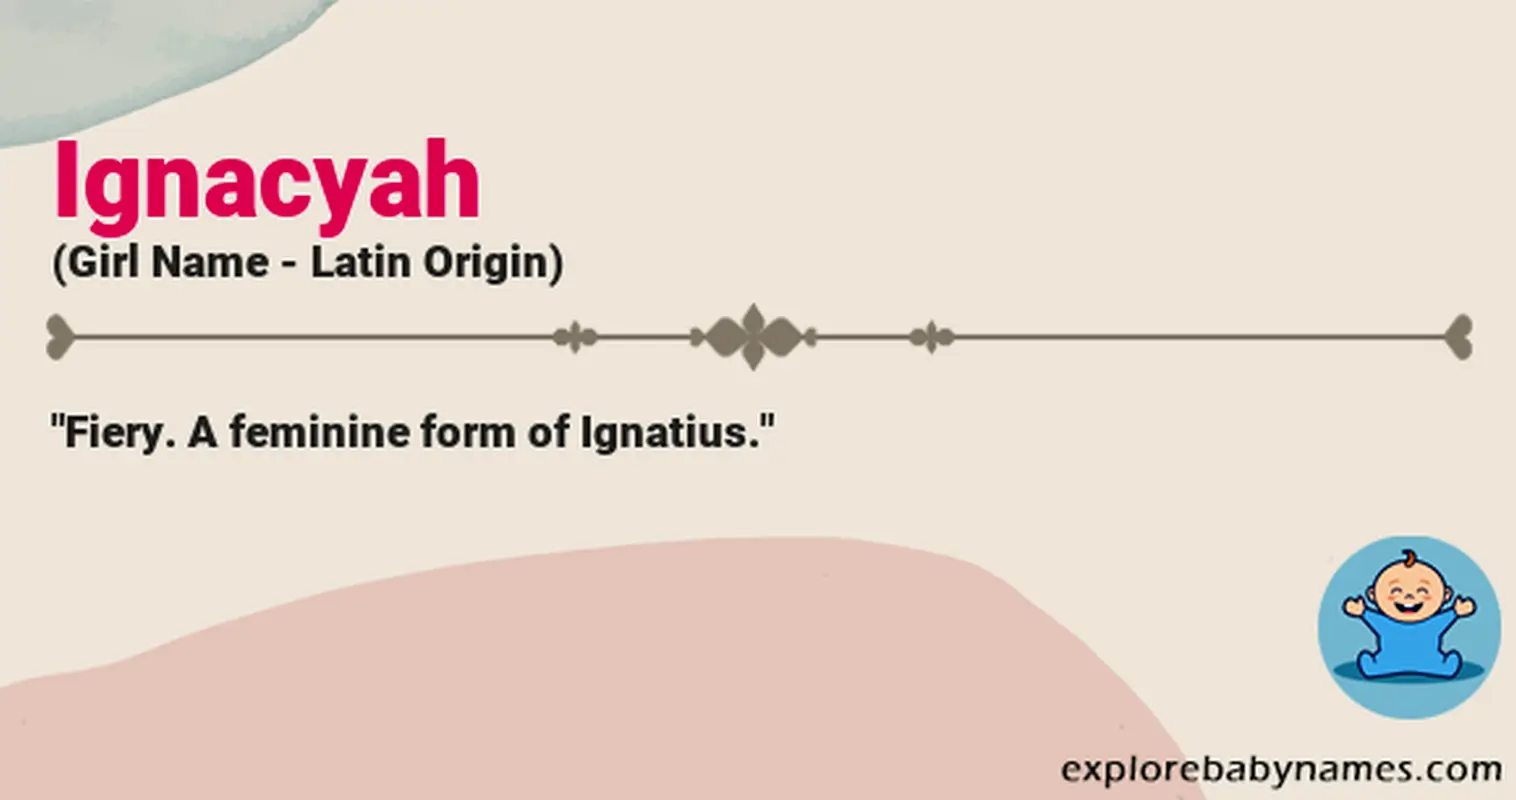 Meaning of Ignacyah